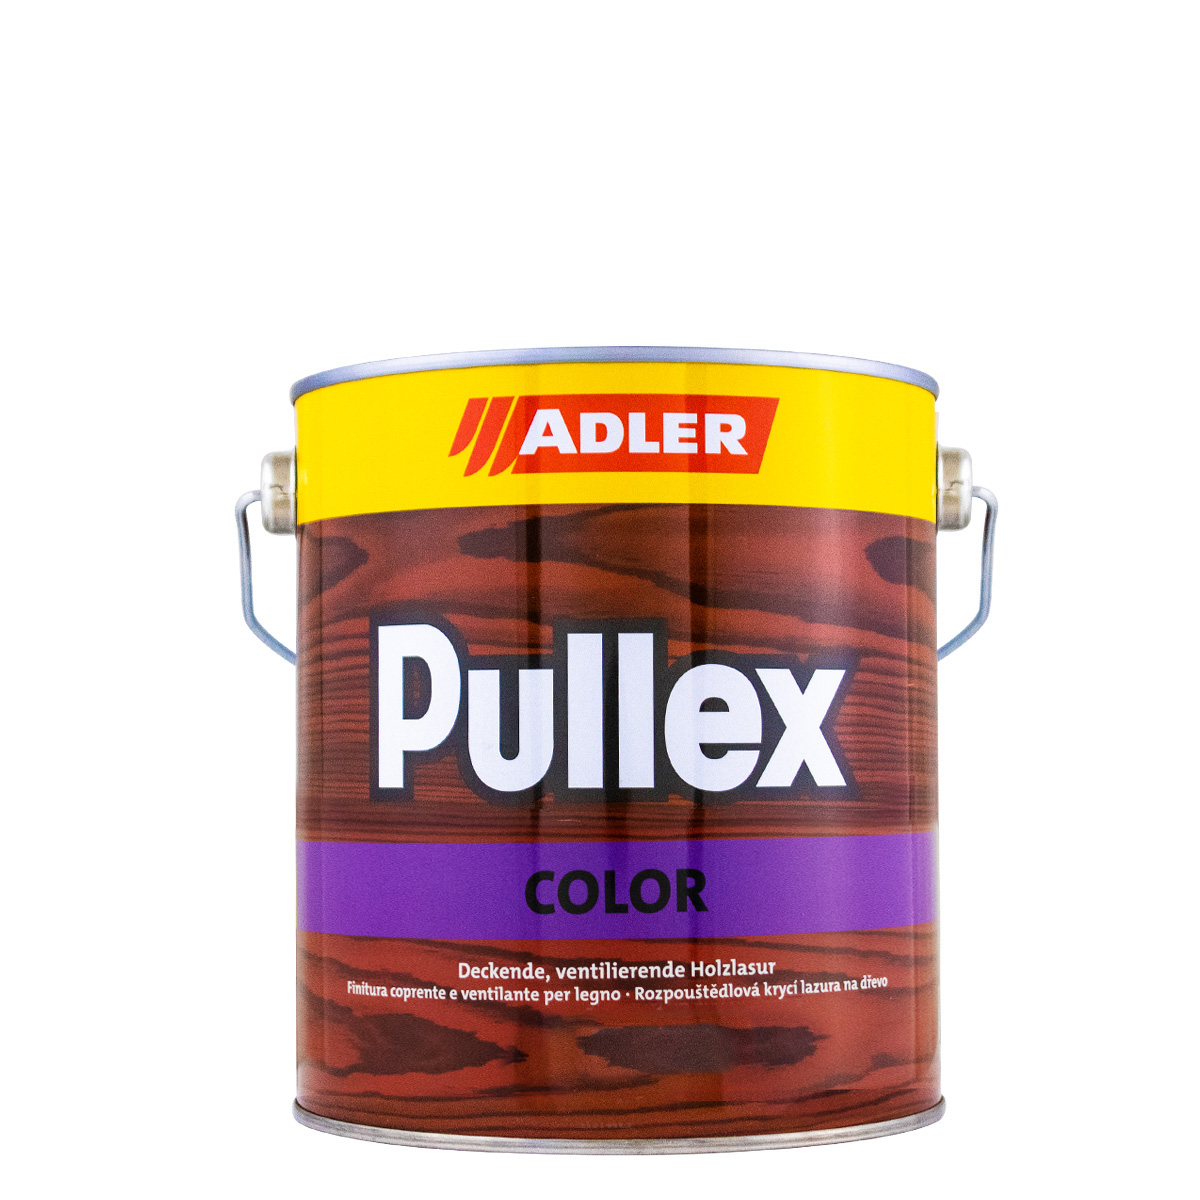 adler_pullex_color_2,5L_gross